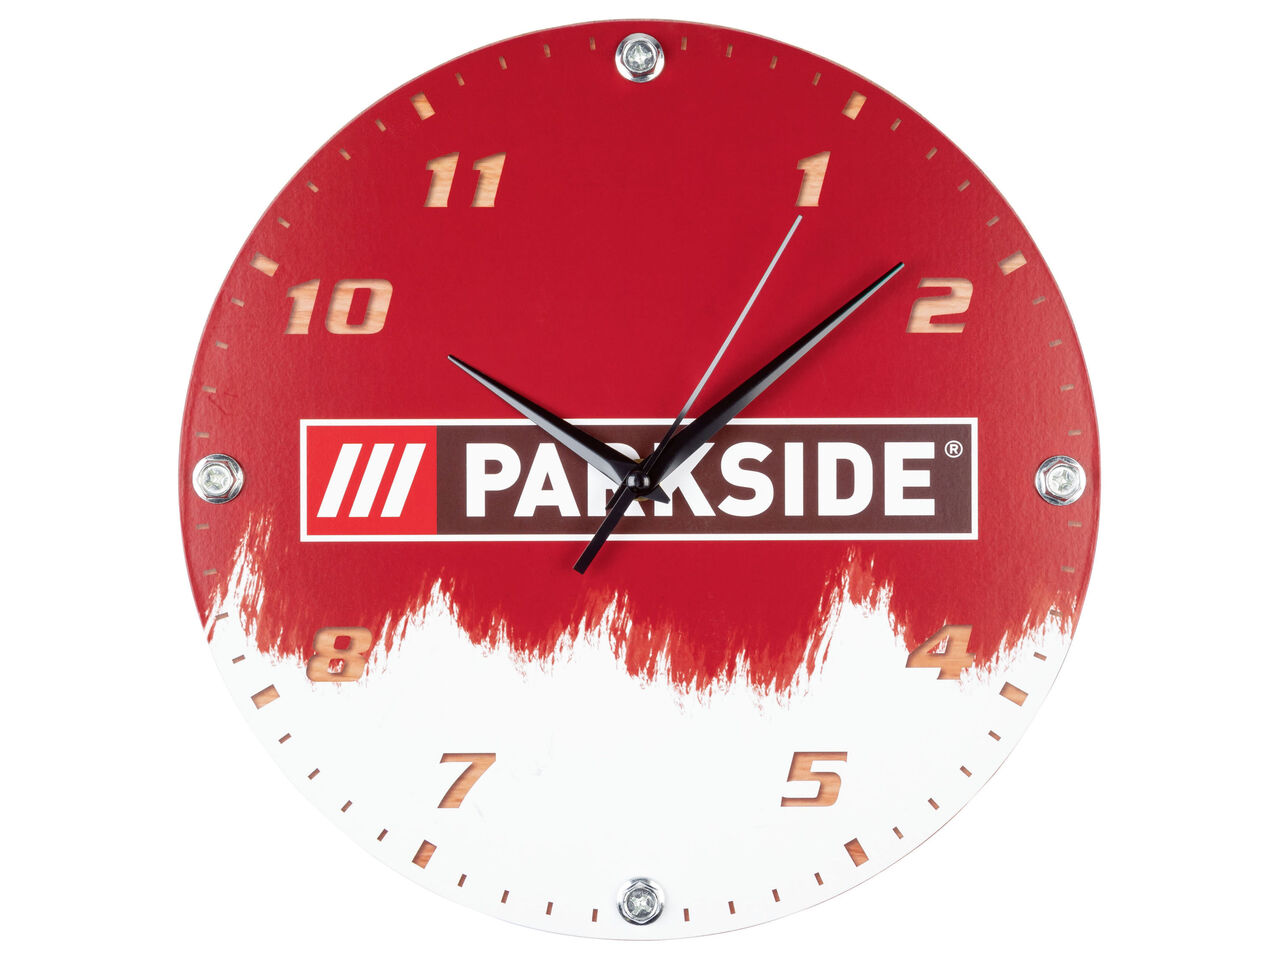 PARKSIDE® Zegar ścienny z kolekcji Parkside , cena 24,99 PLN 
PARKSIDE® Zegar ...